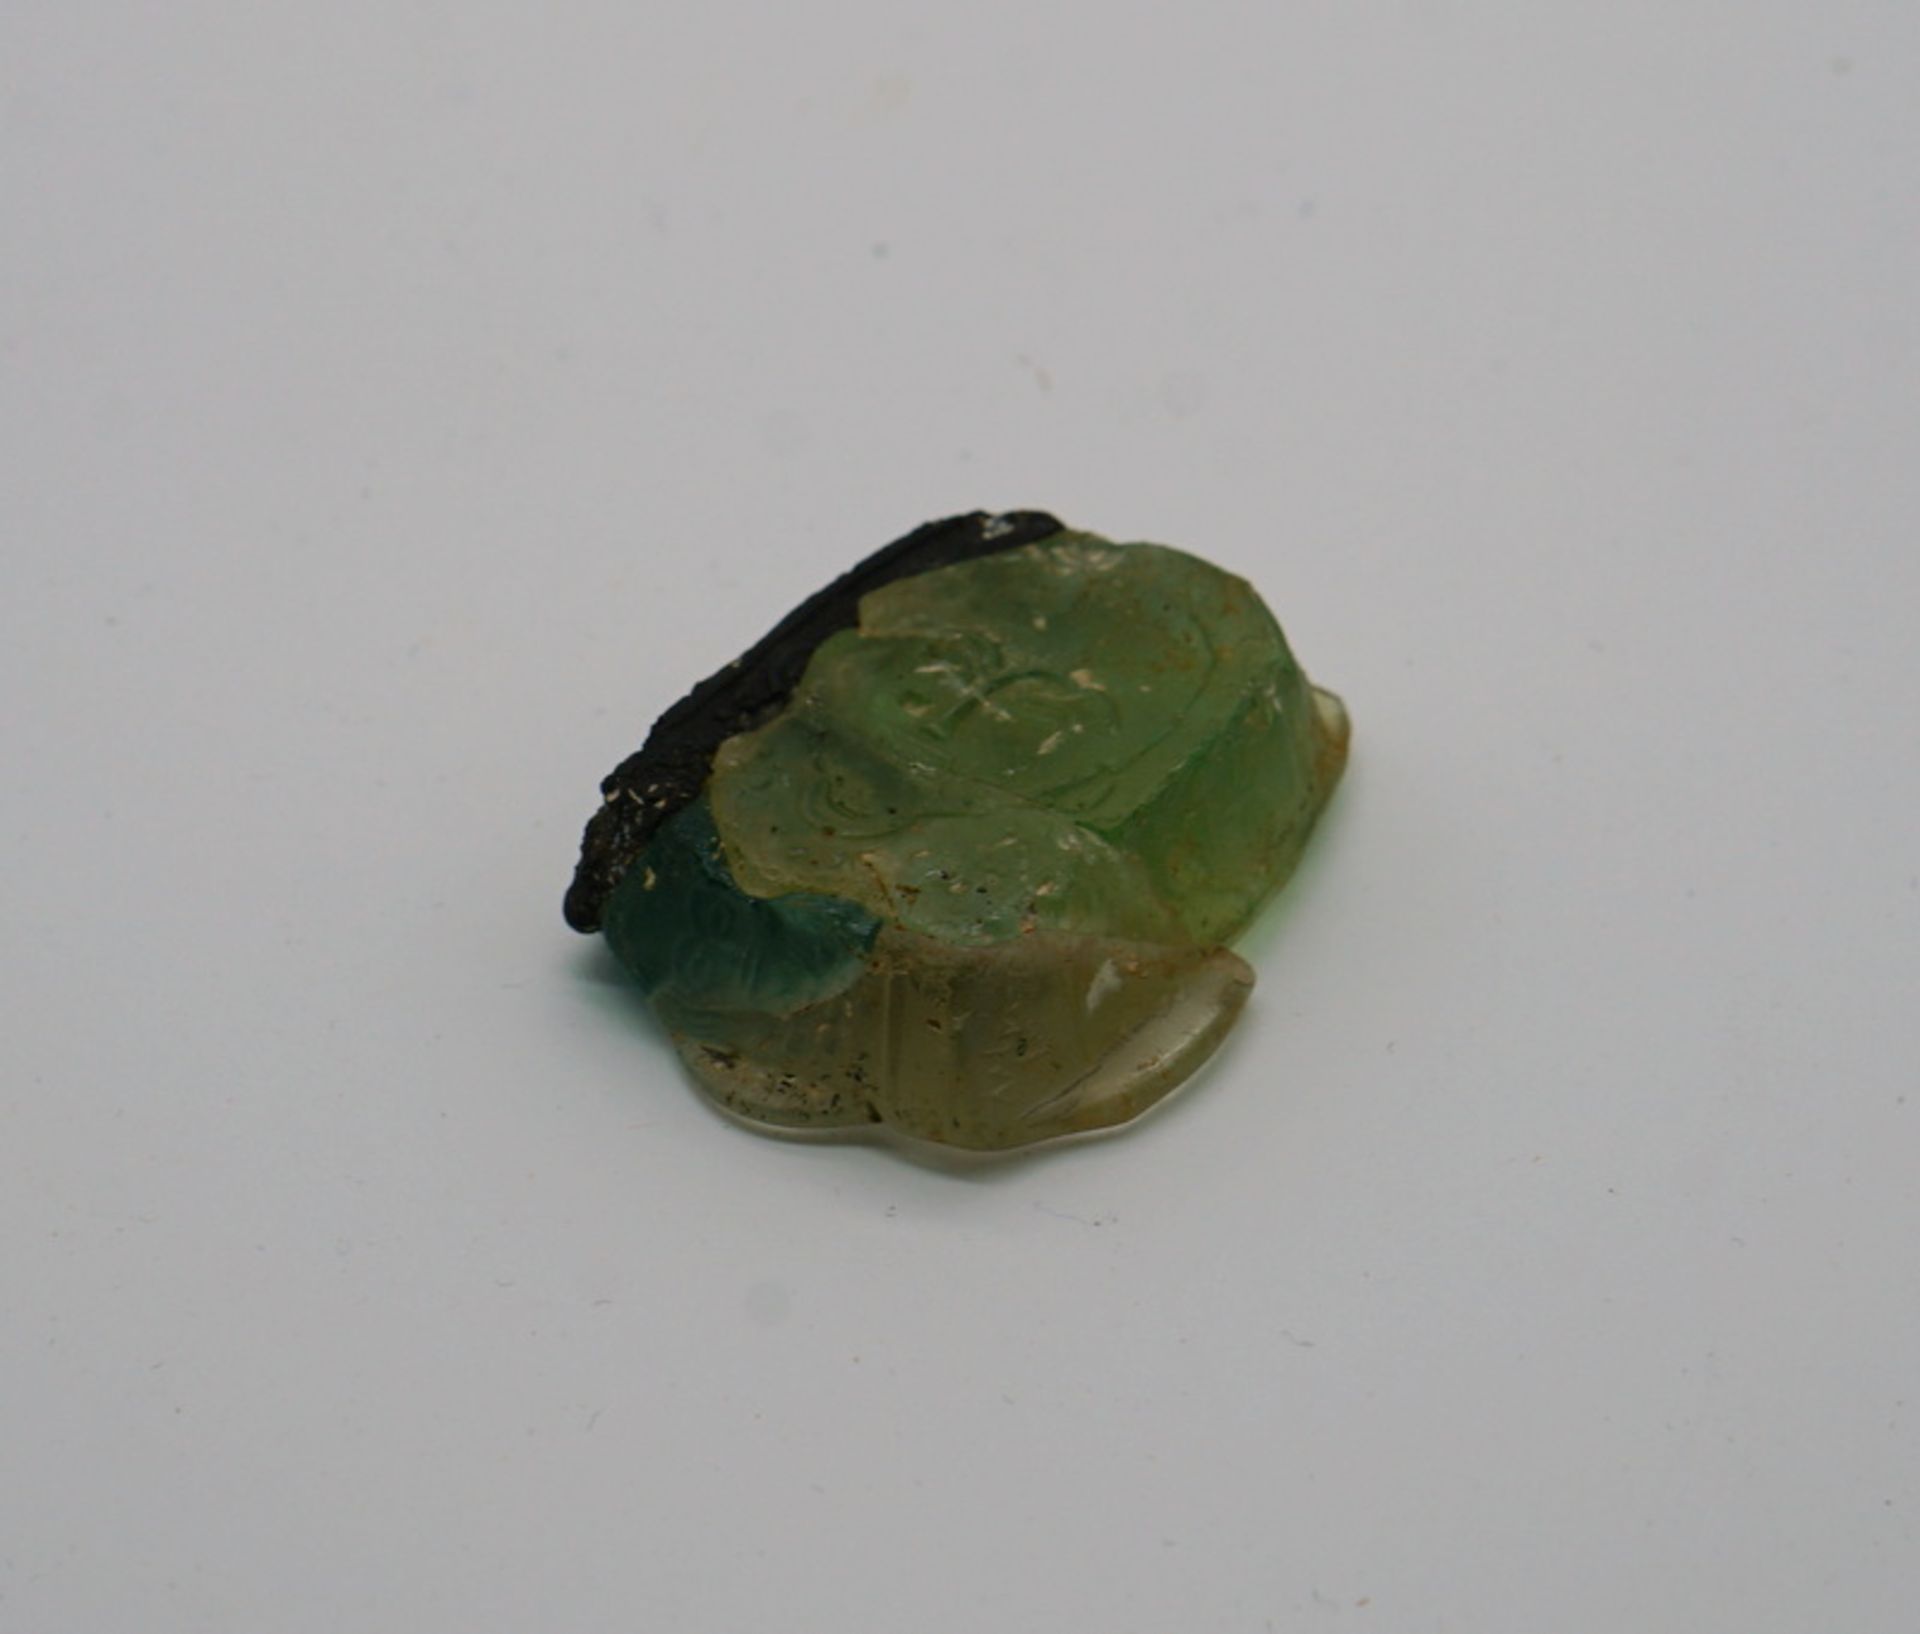 Seltenes Münzgewicht aus gefärbtem Glas, 600 n.Chr. - Bild 2 aus 3